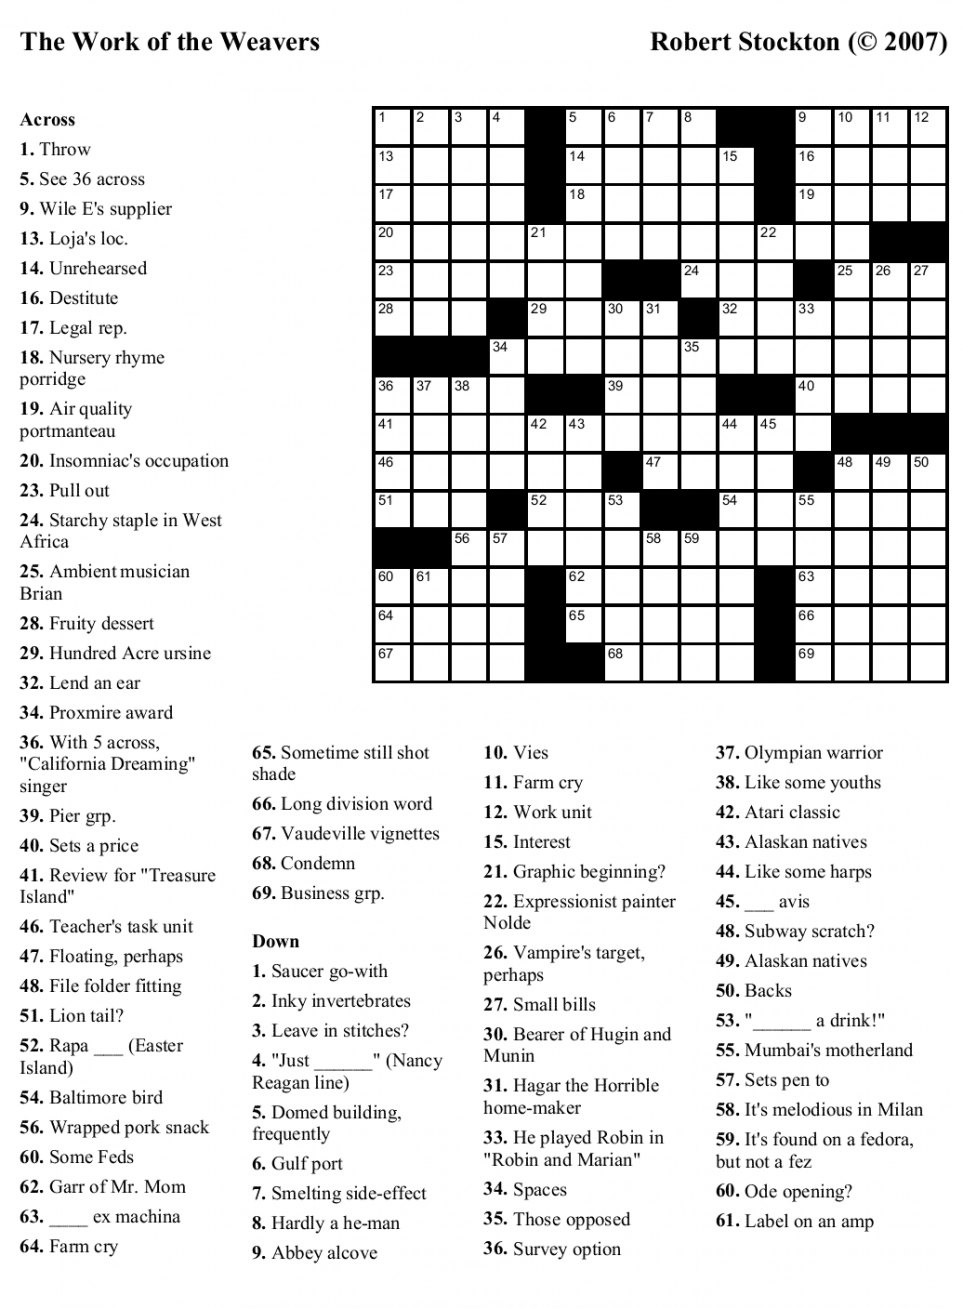 Free Printable Very Easy Crossword Puzzles